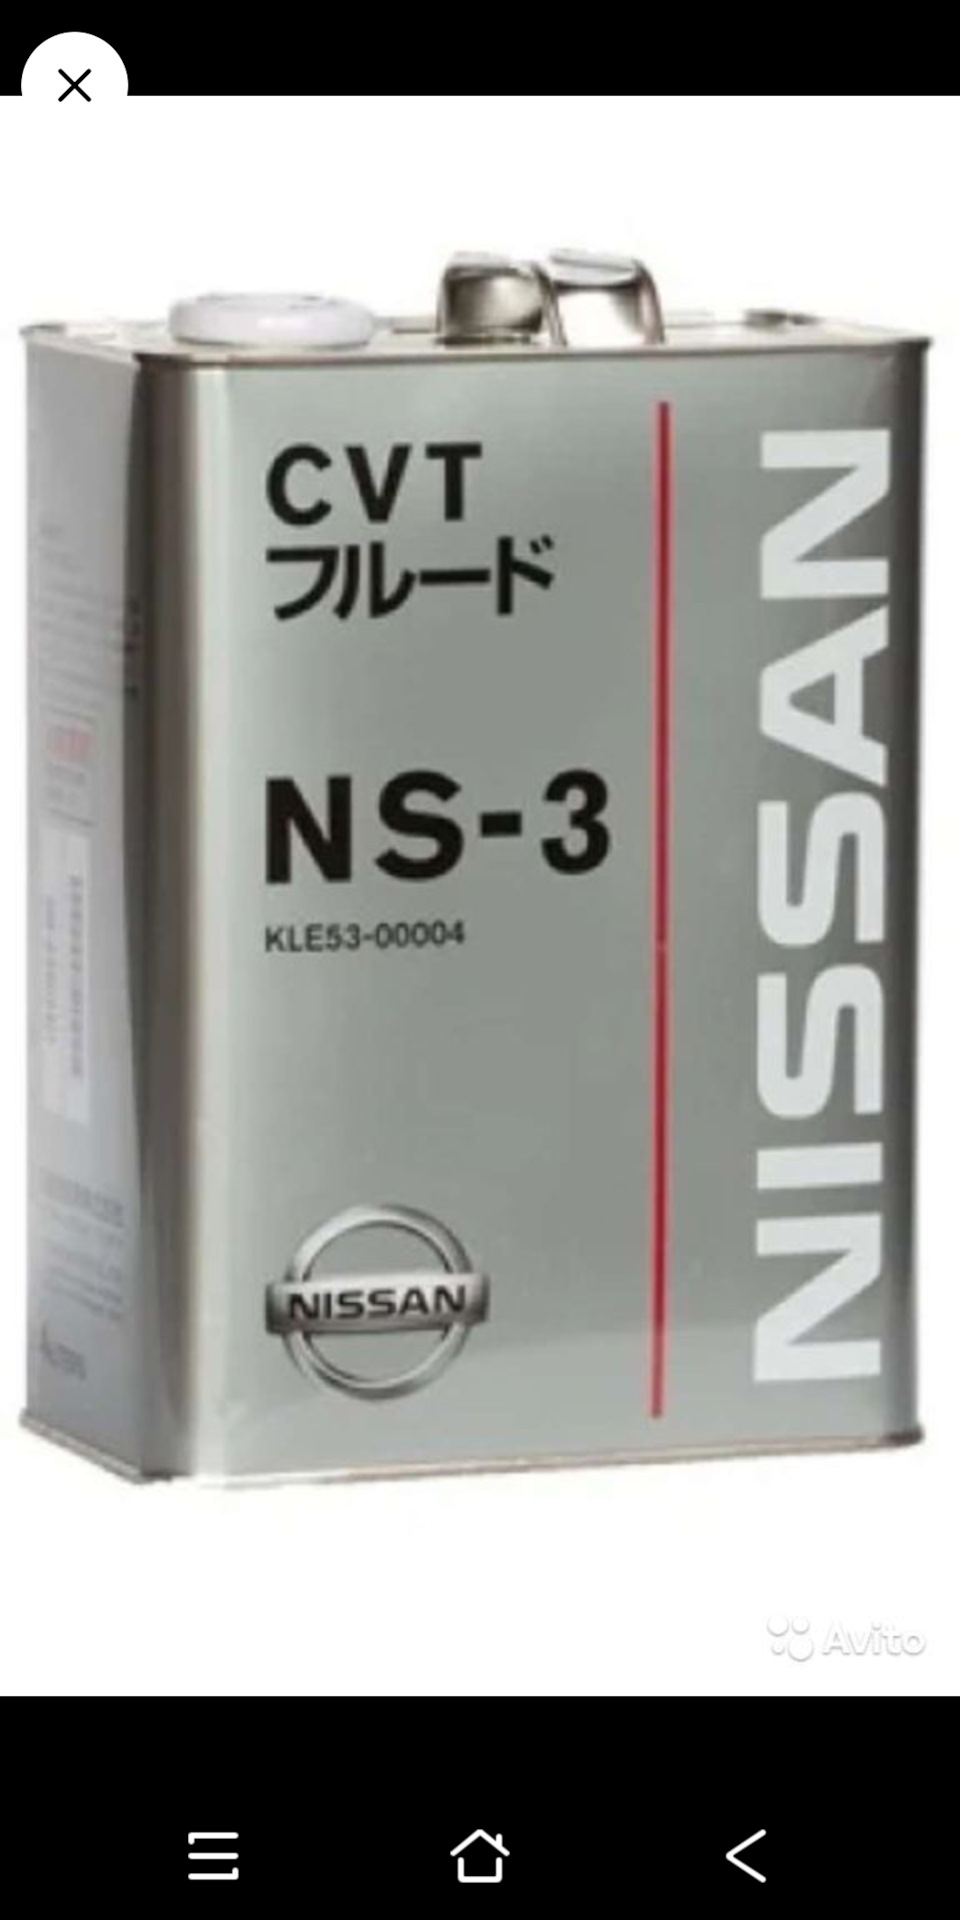 Масло трансмиссионное nissan cvt. Nissan CVT NS-3 4л. Kle53-00004. Nissan NS-3 CVT Fluid. Масло Ниссан CVT NS-3. Масло NS-3 CVT для Ниссан артикул.